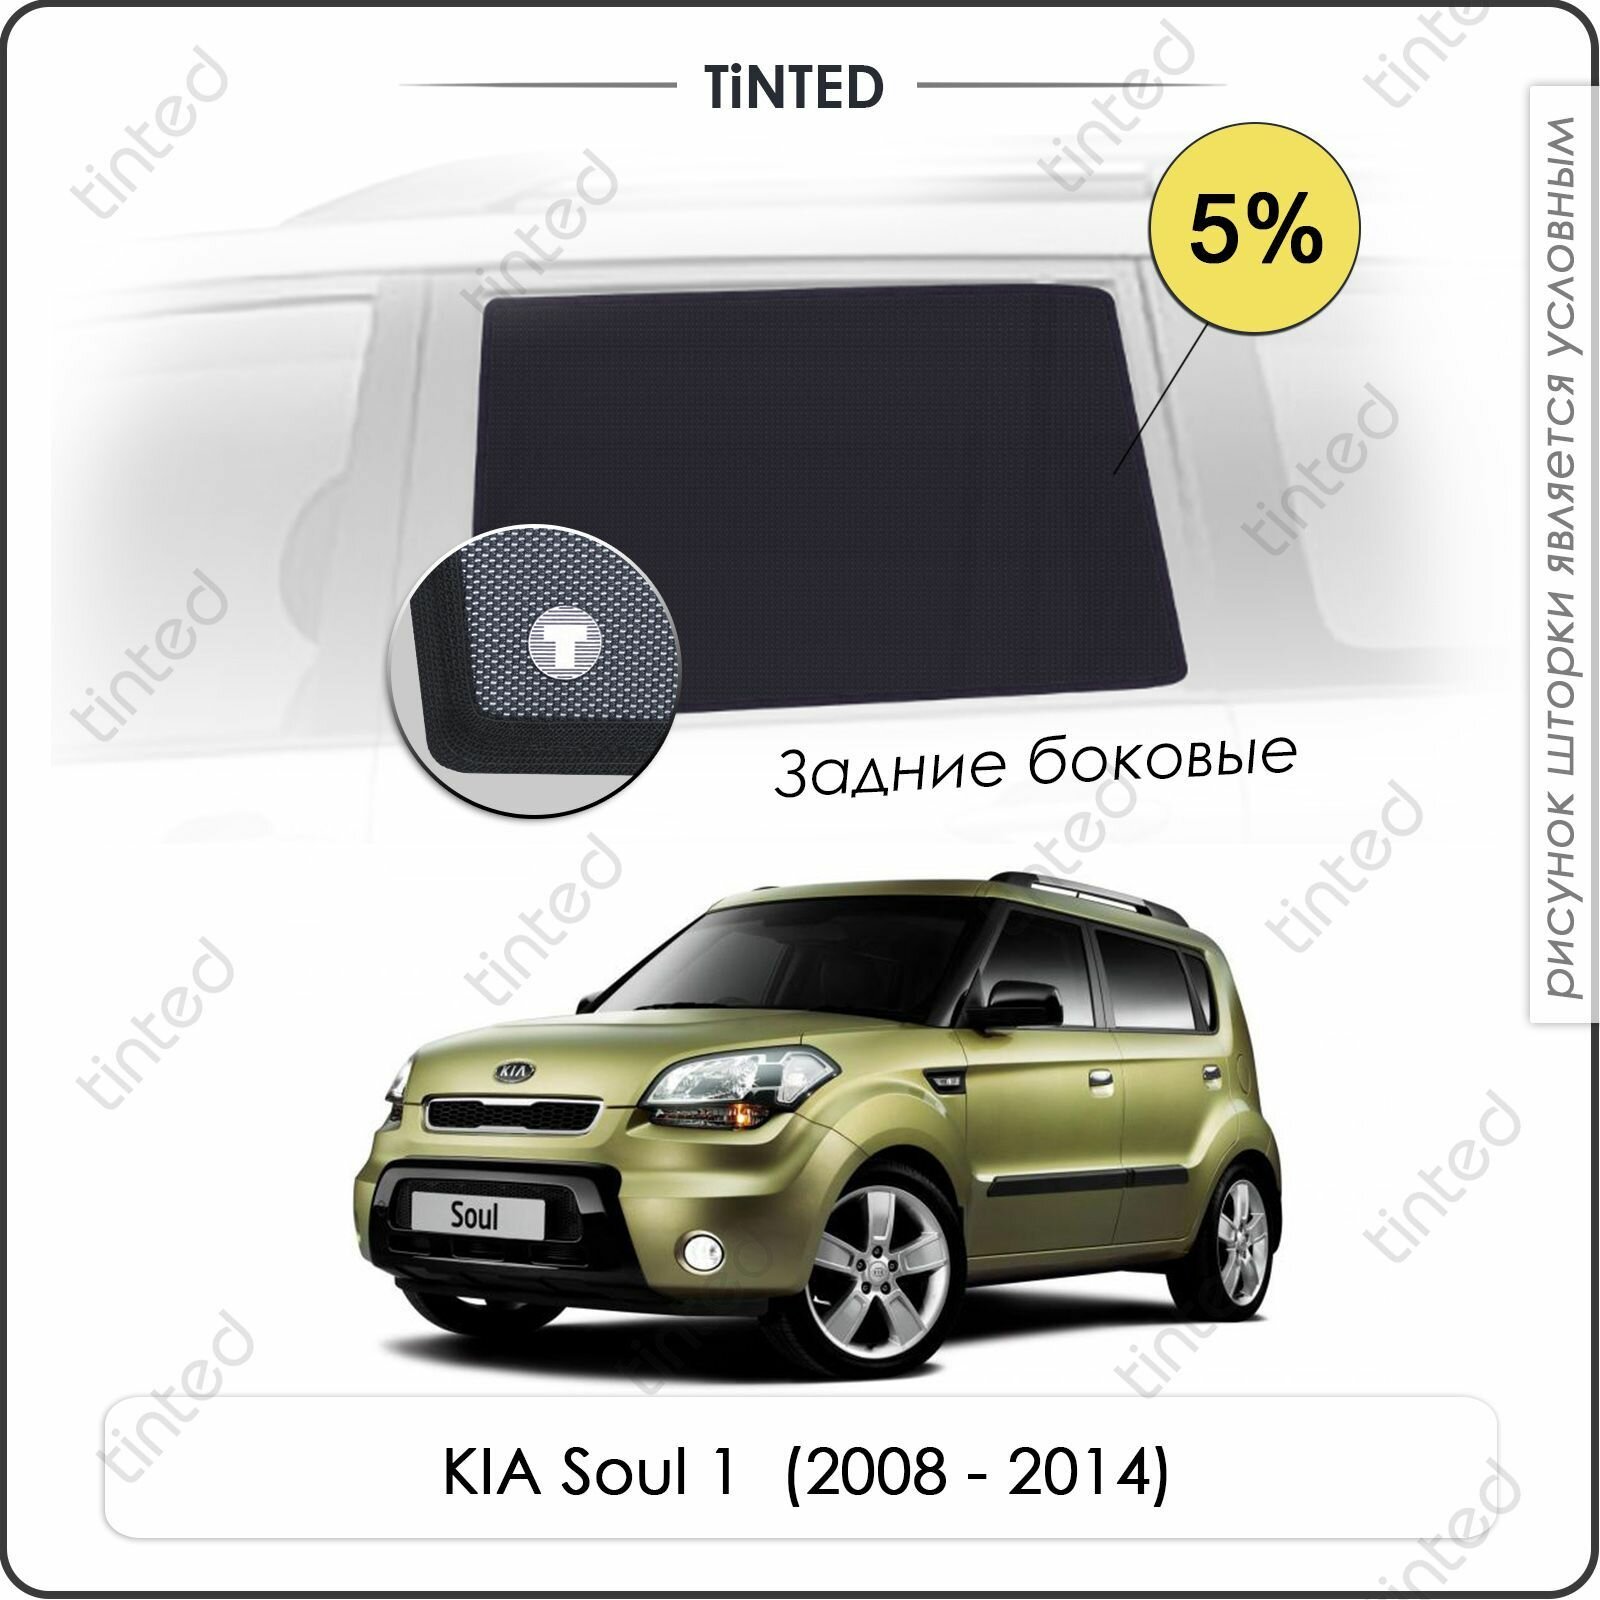 Шторки на автомобиль солнцезащитные KIA Soul 1 Хетчбек 5дв. (2008 - 2014) на передние двери 5% сетки от солнца в машину КИА соул Каркасные автошторки Premium